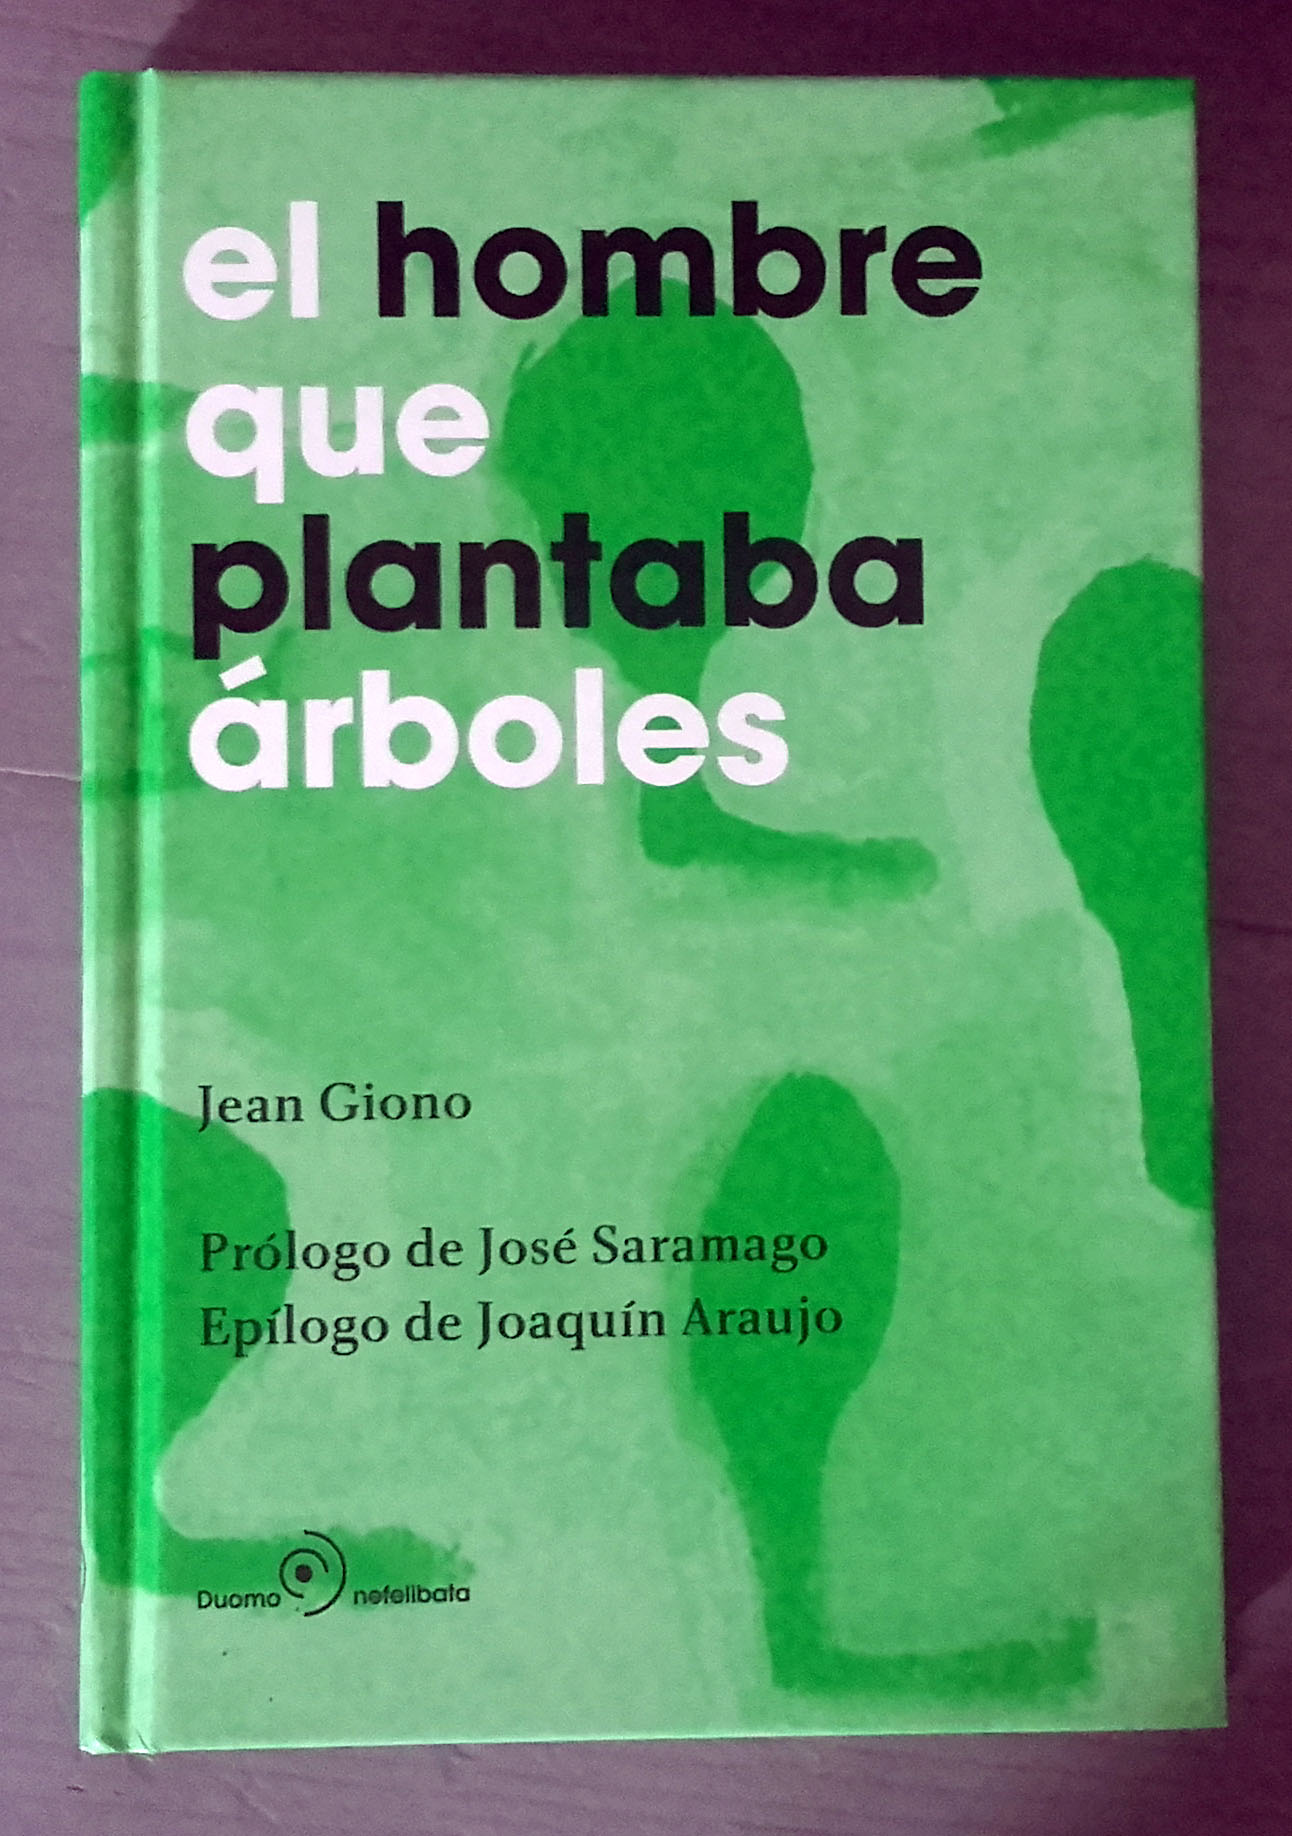 El hombre que plantaba árboles, de Jean Giono. – galicianGarden